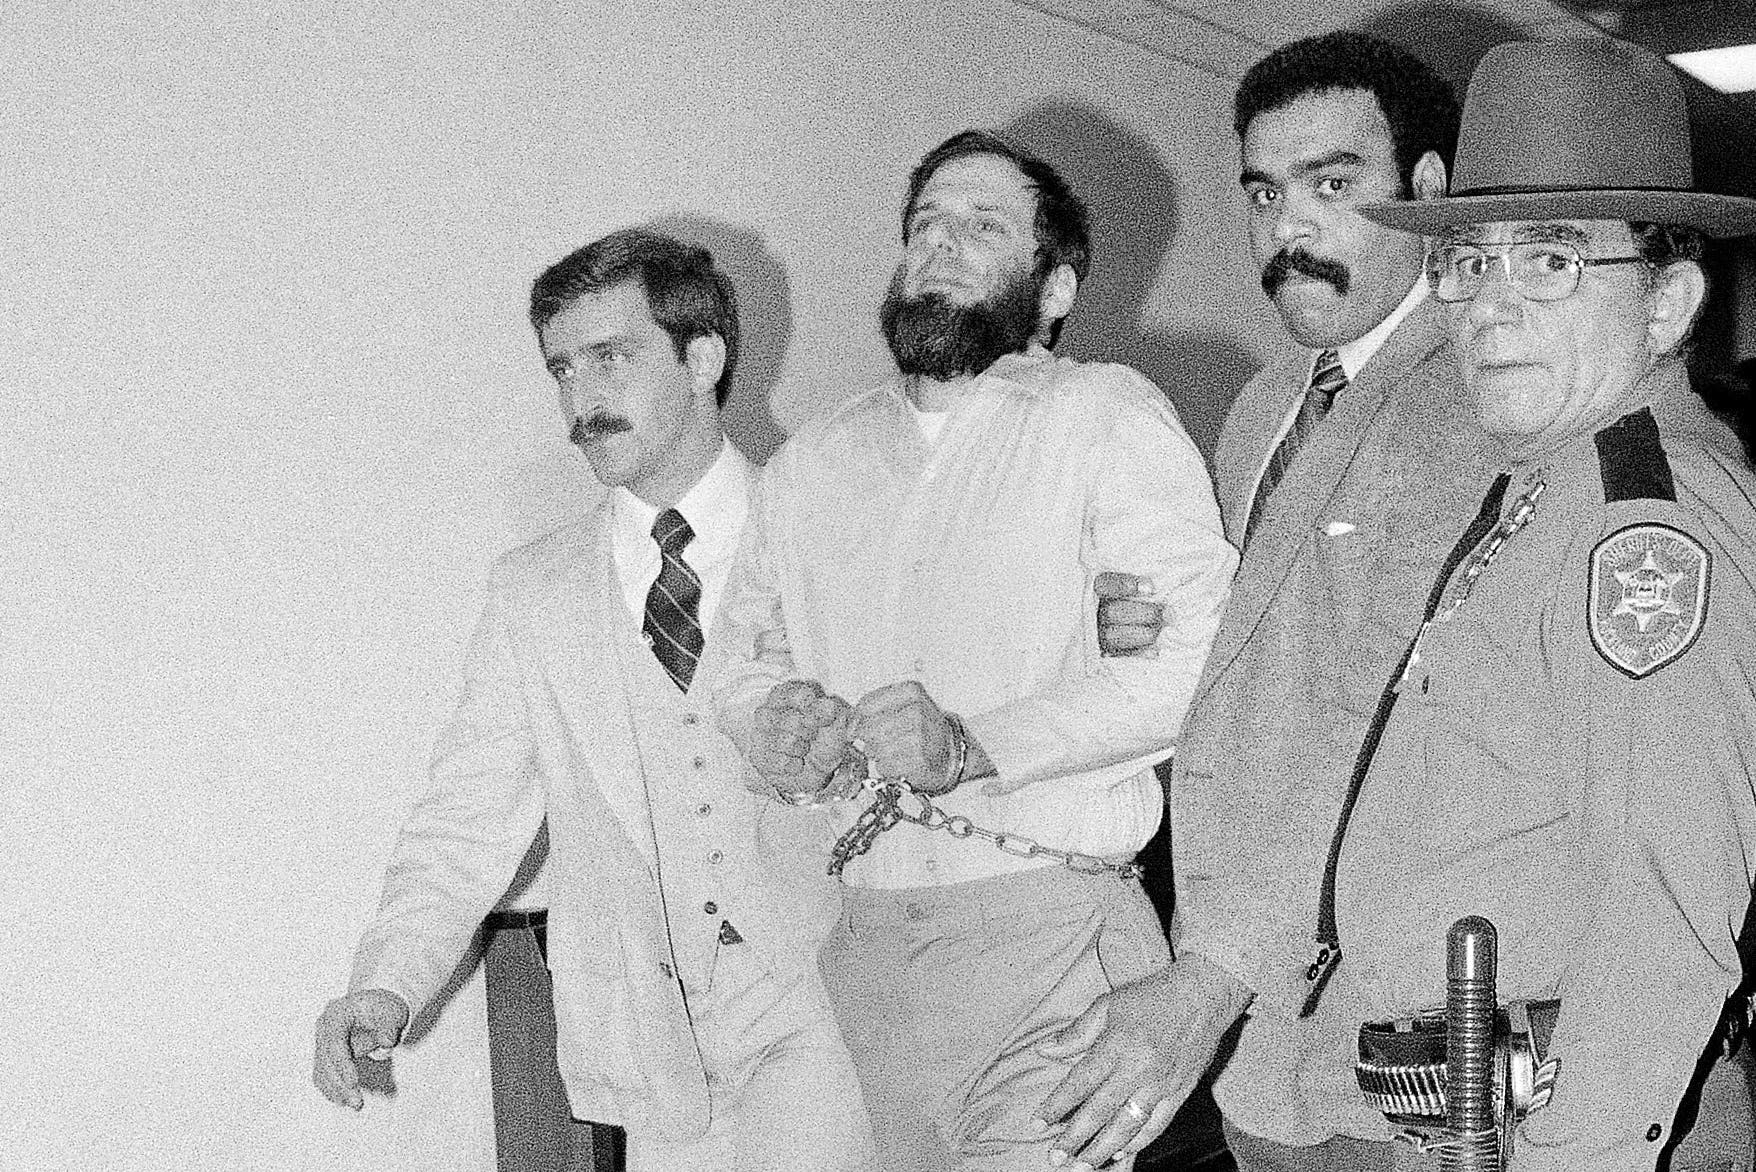 Prosecutor son seeks father's release in fatal 1981 Brink's heist